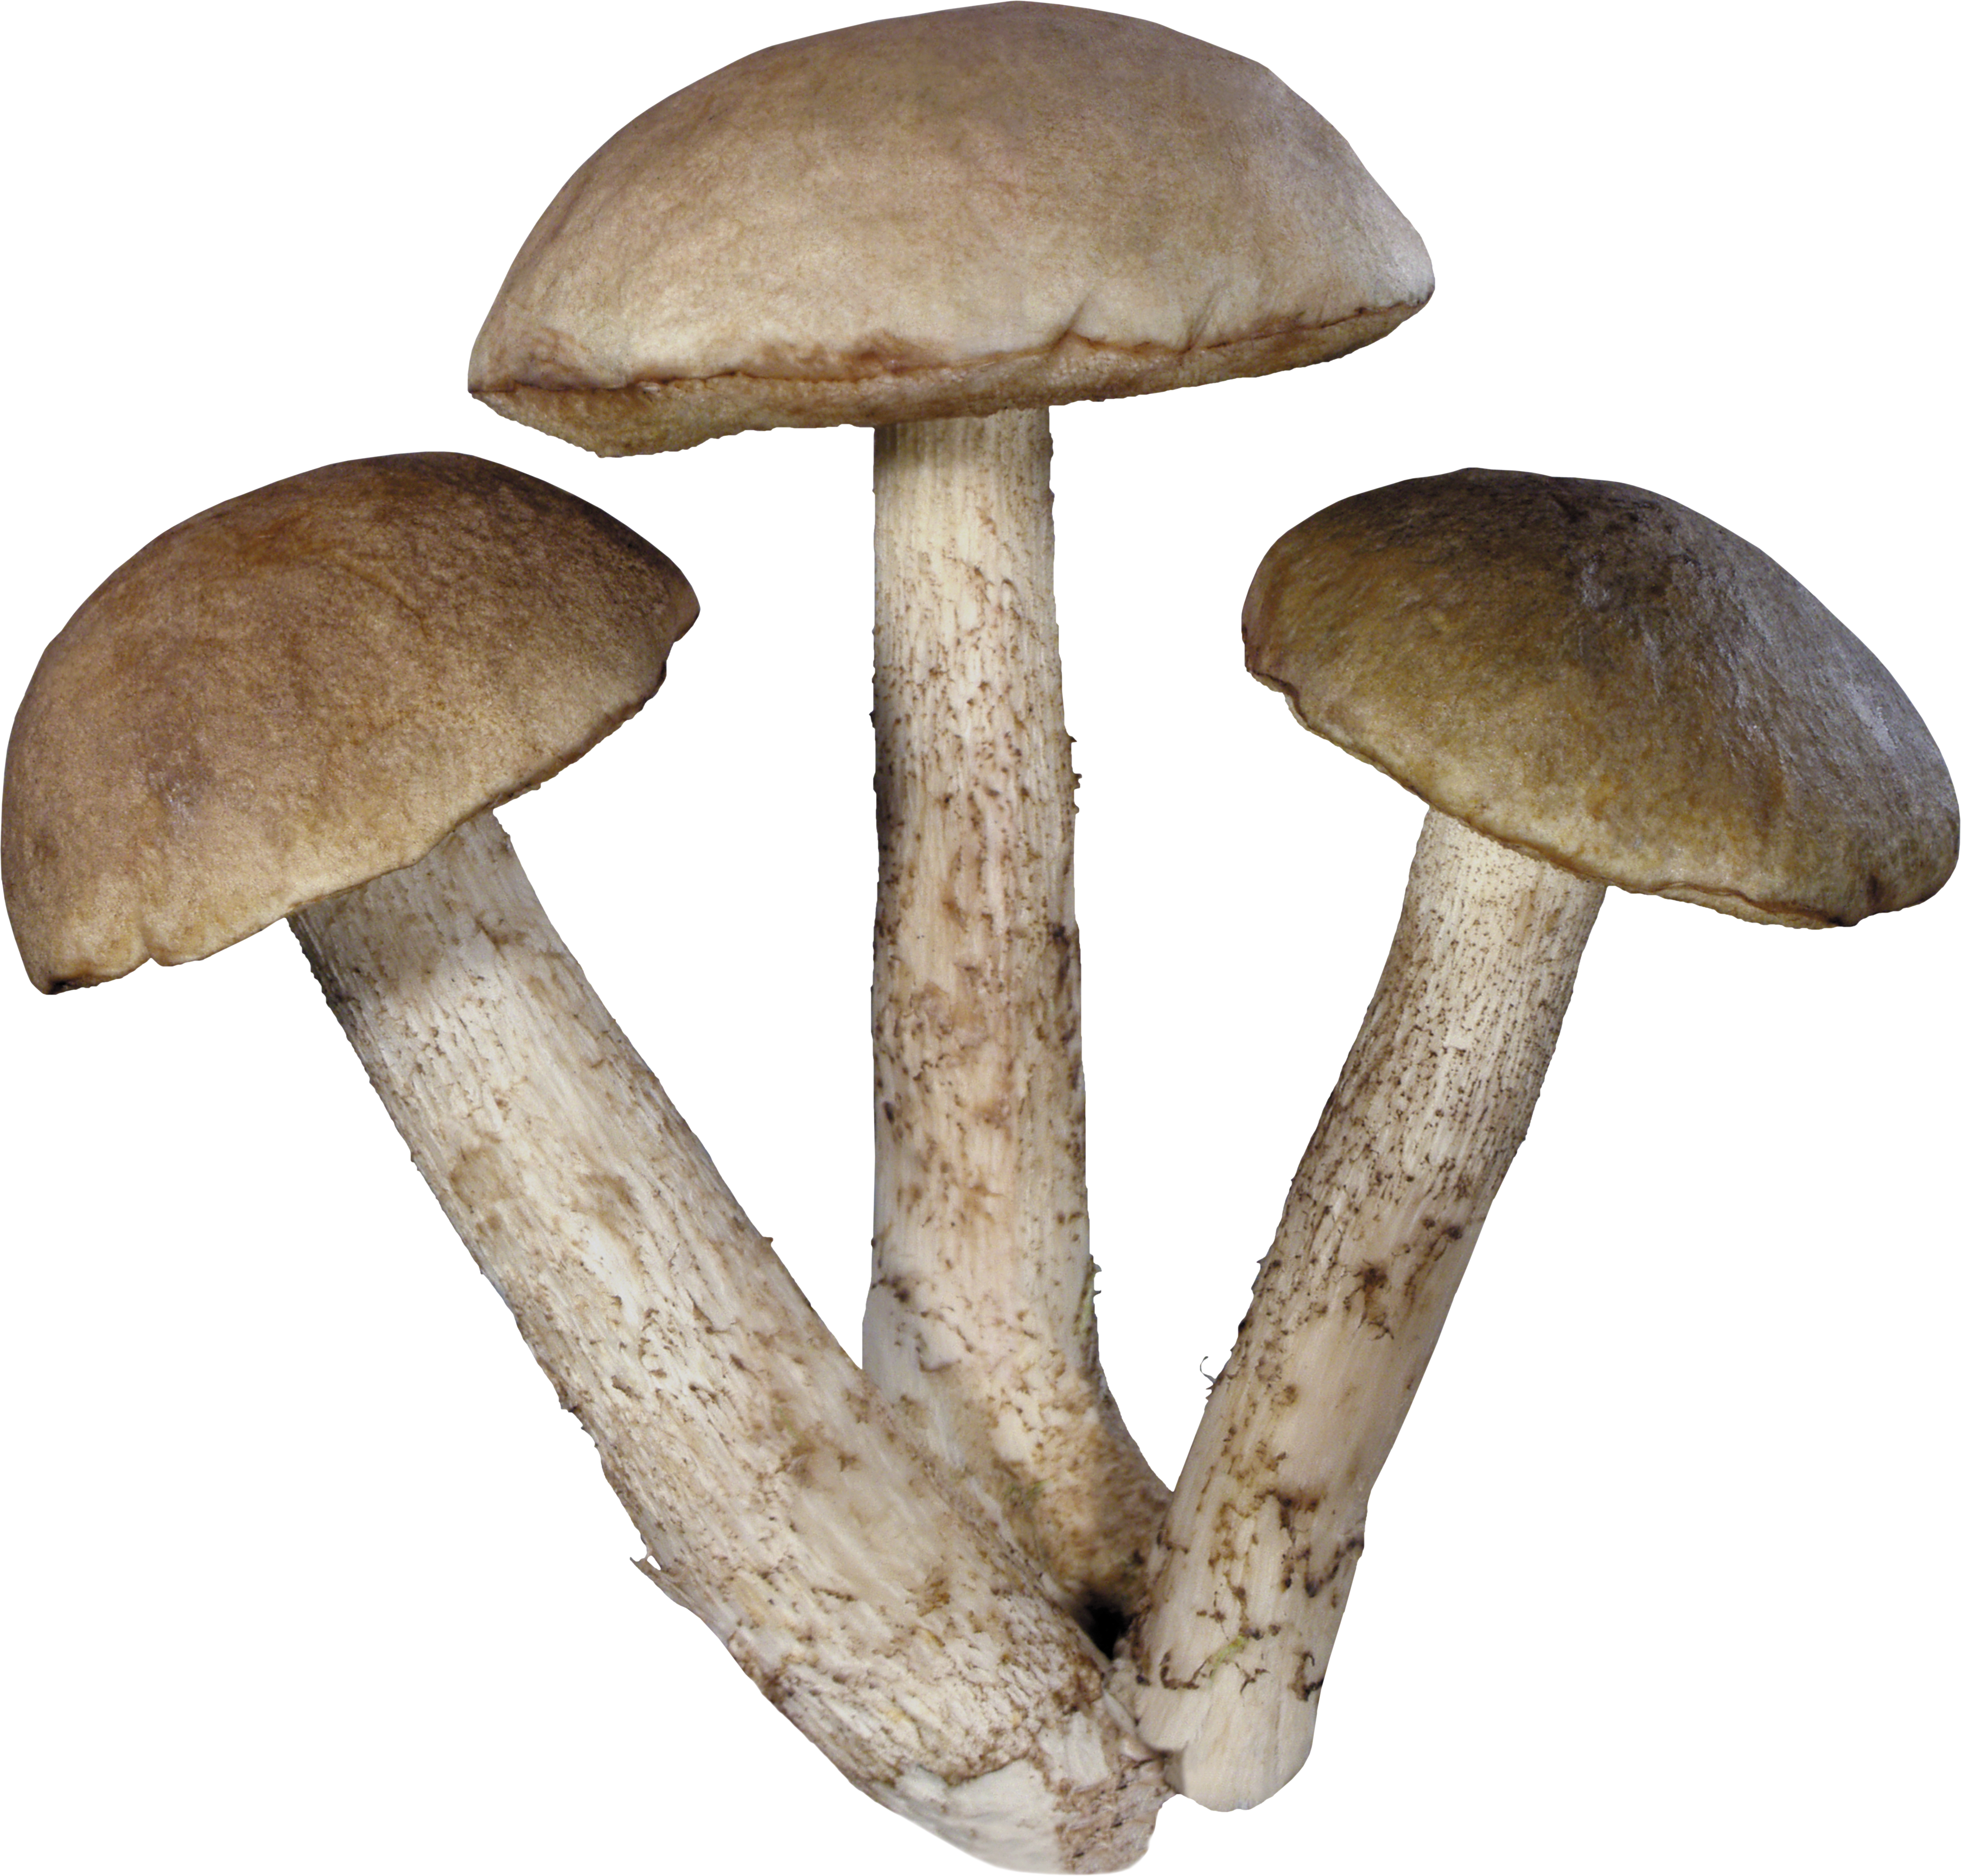 Magic Mushroom Png image #428